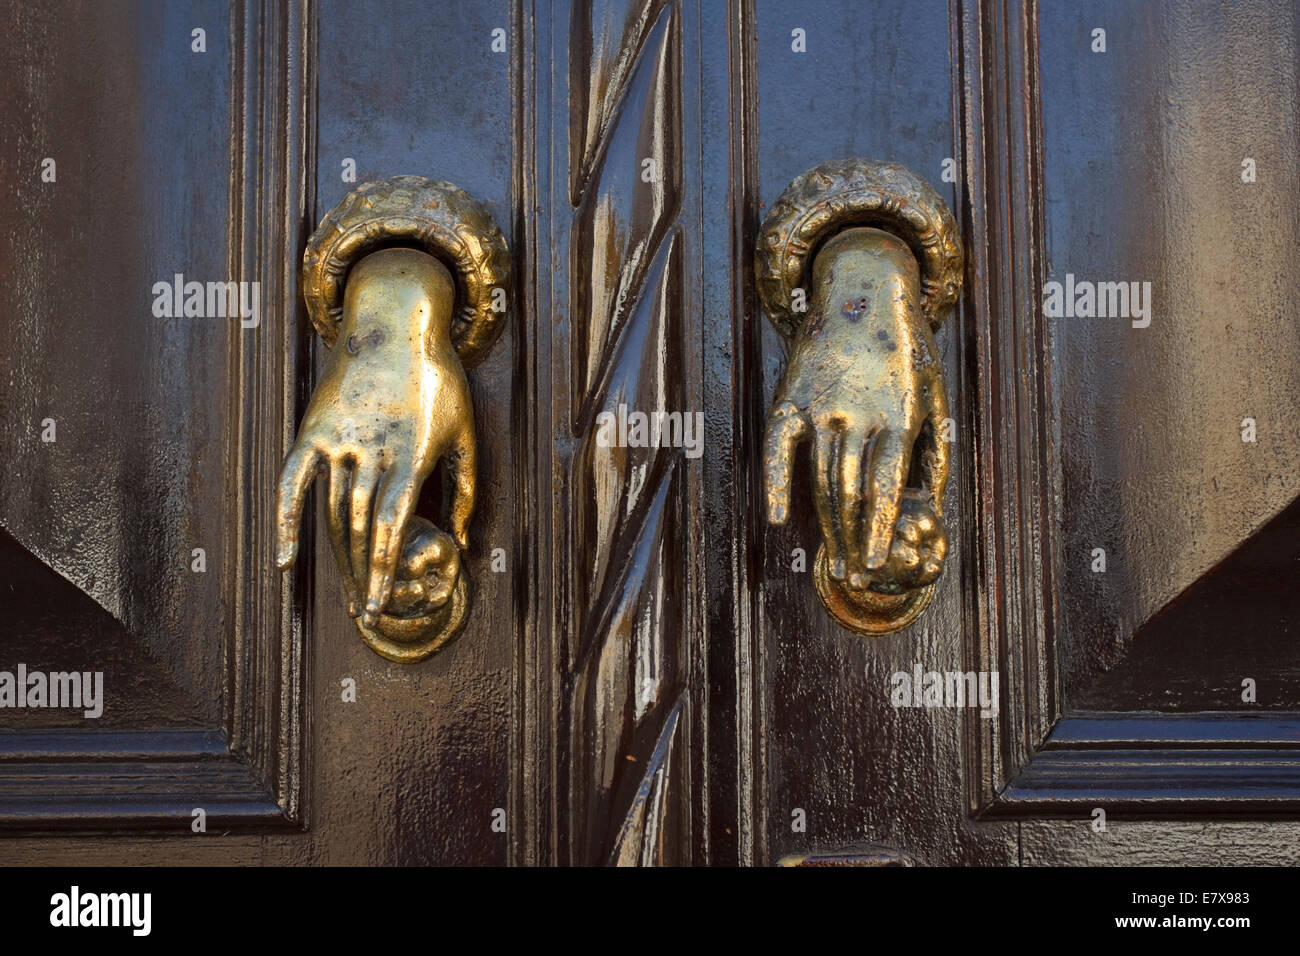 Braune Tür in der alten Stadt Tavira haben kleine Messing Türgriffe in der Form der Hände. Stockfoto